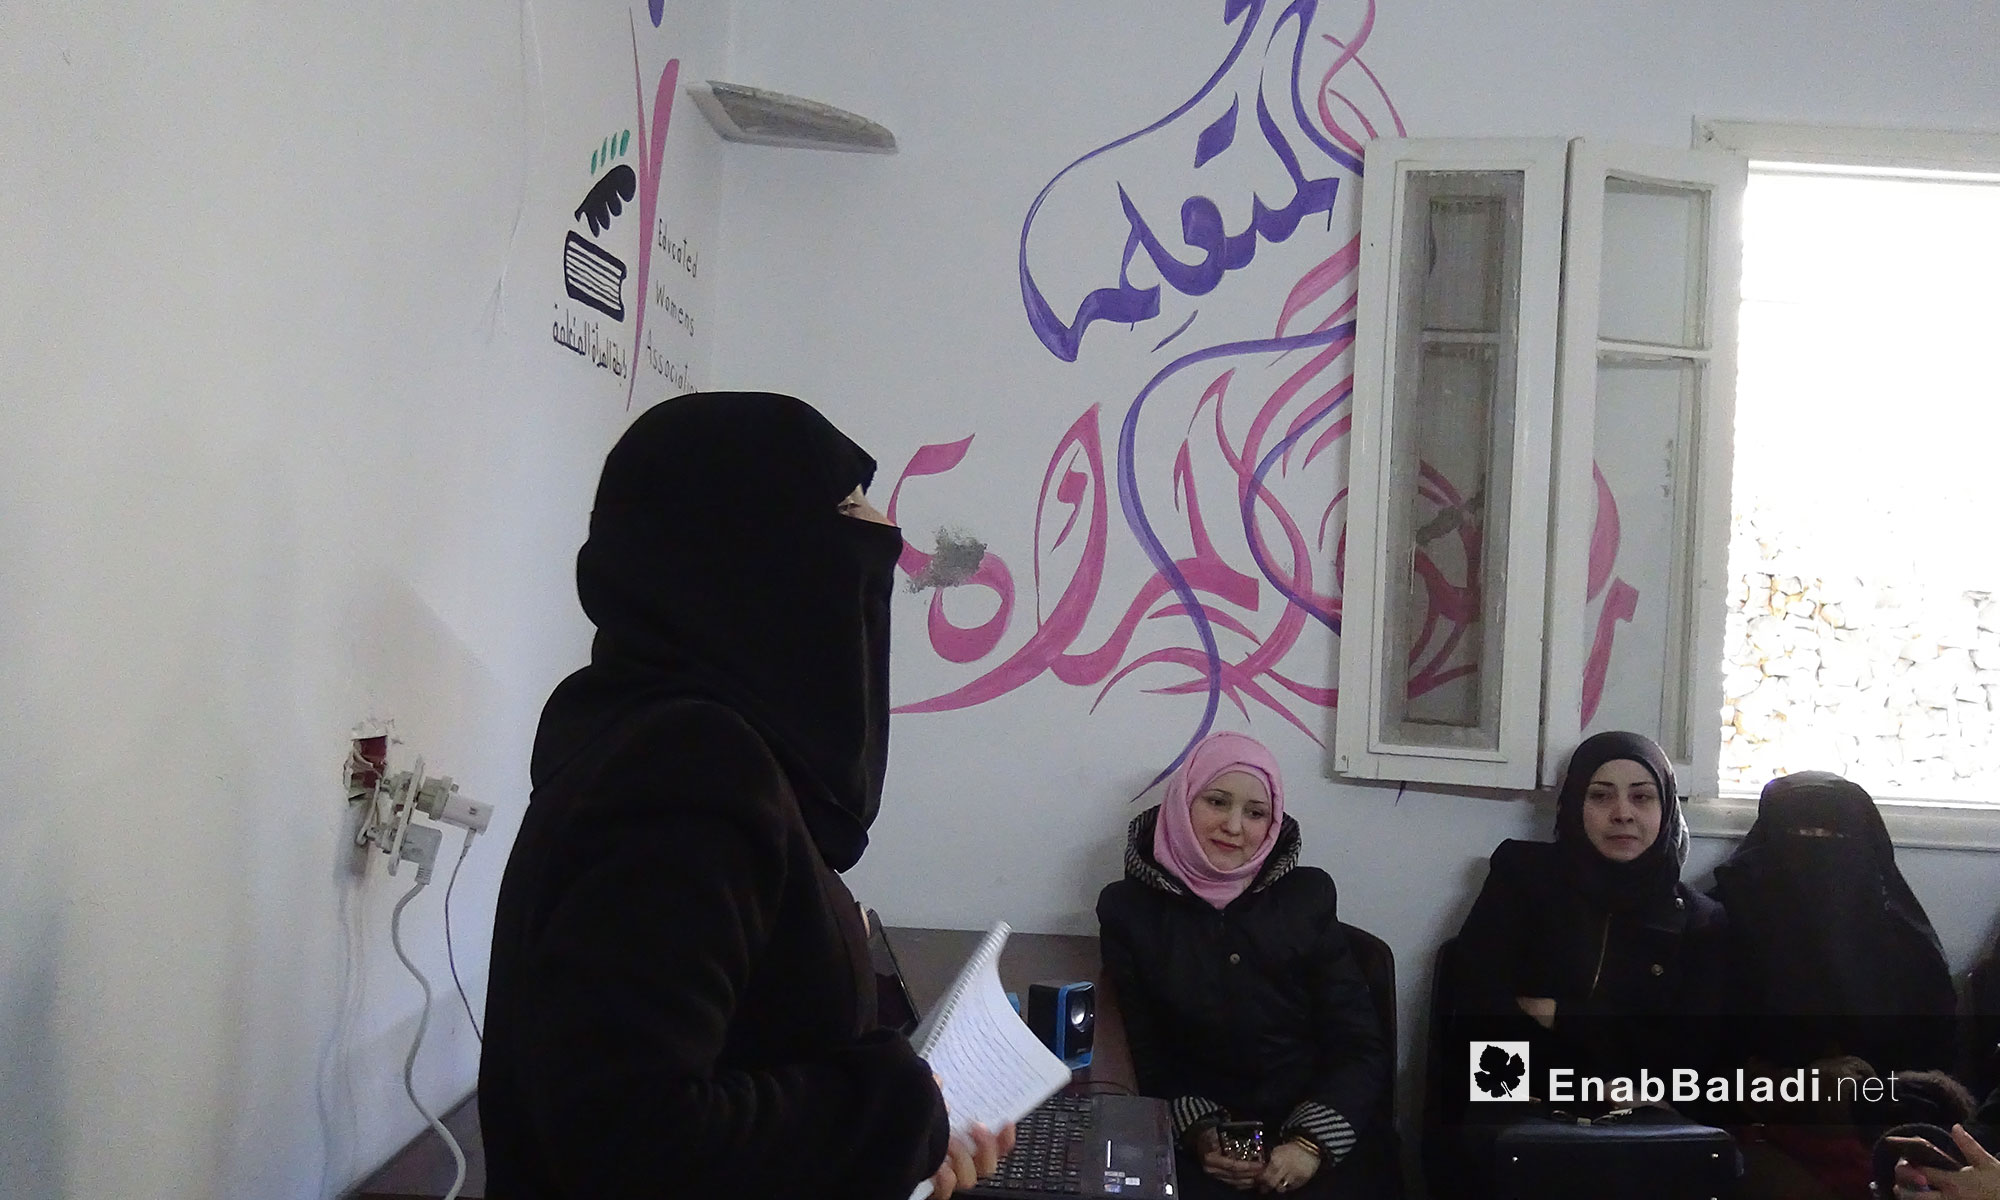 وقفة تضامنية للتذكير بالمعتقلات في سجون النظام  في يوم المرأة العالمي - "رابطة المرأة المتعلمة" إدلب - 8 آذار 2017 (عنب بلدي)